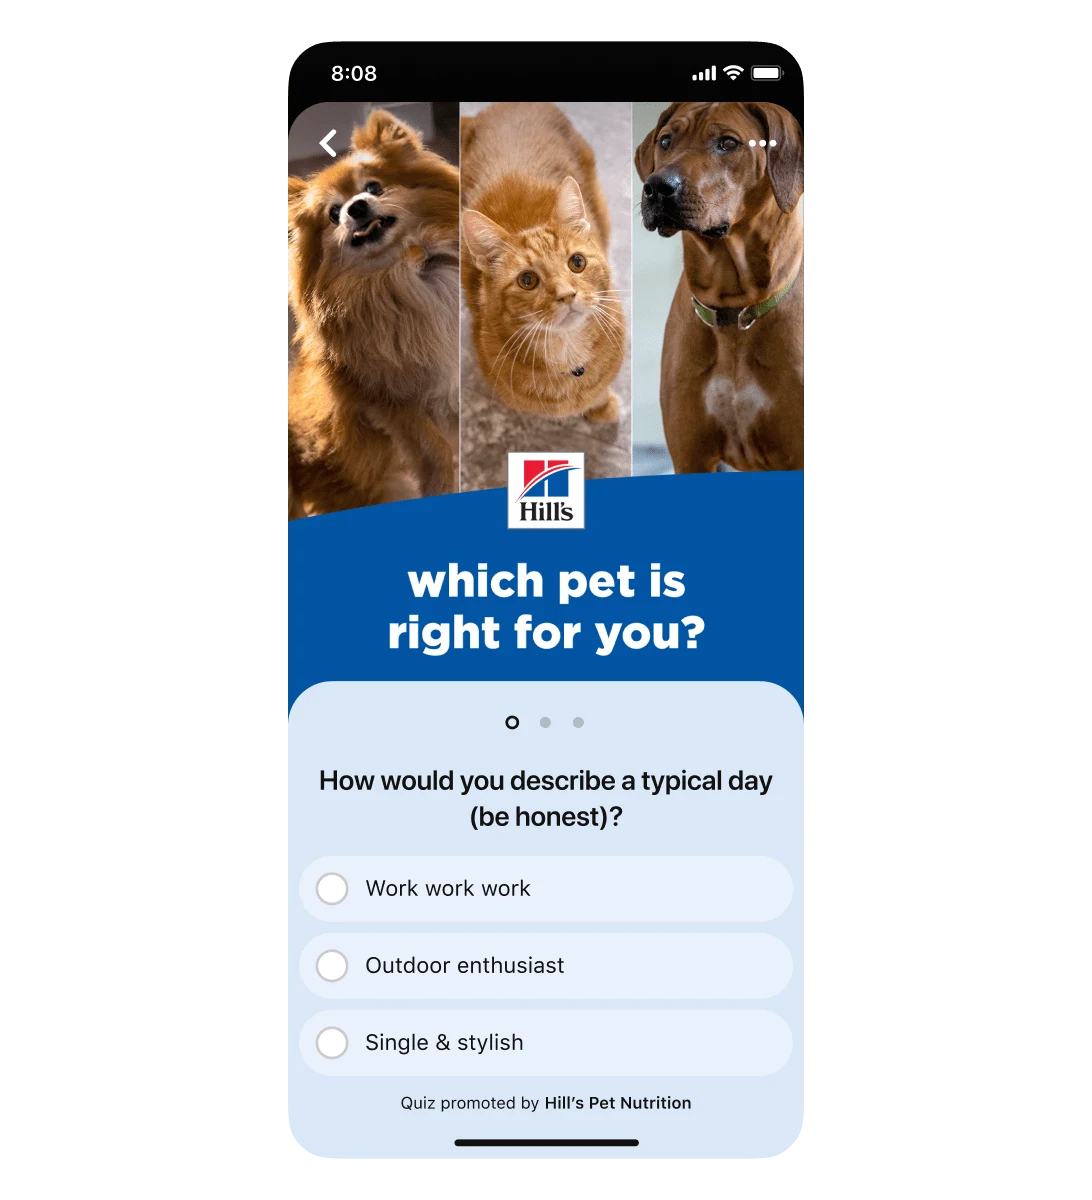 Giao diện trên di động của quảng cáo đố vui từ Pinterest cho Hill's Pet Nutrition. Câu hỏi đố vui đầu tiên là “how would you describe a typical day (be honest)?” Ba phương án trả lời gồm: “work work work”, “outdoor enthusiast” và “single & stylish”.